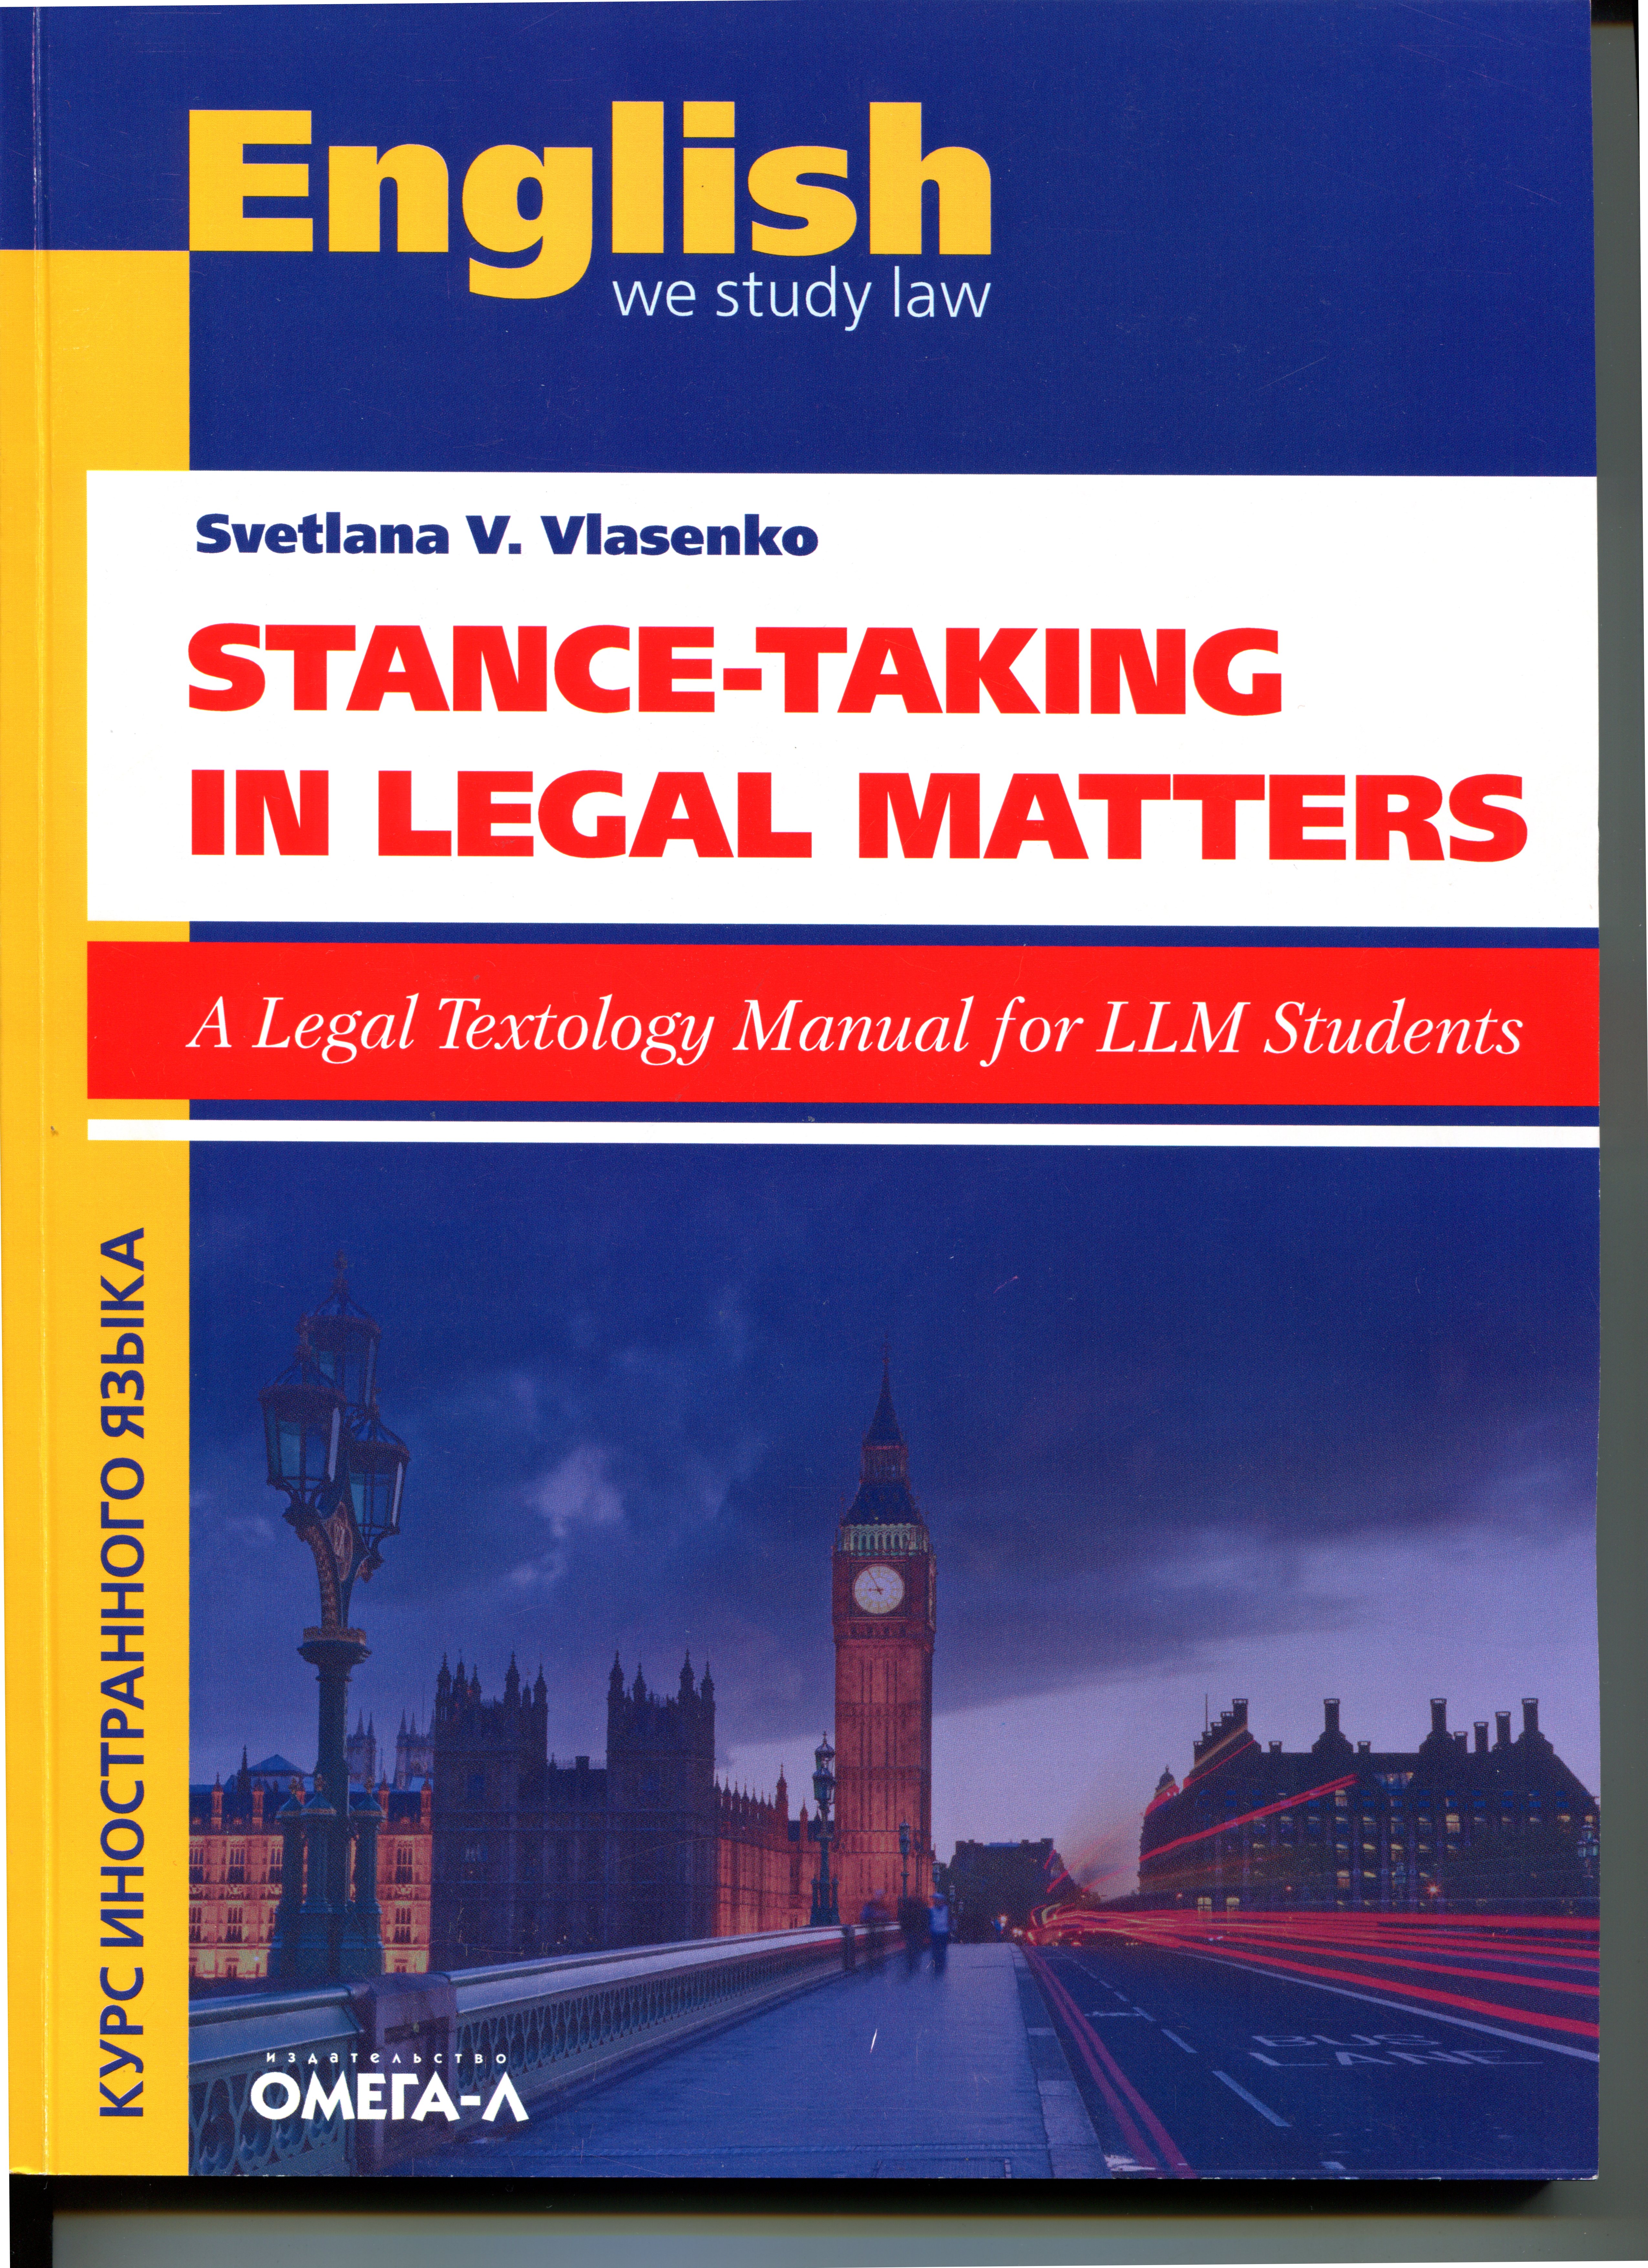 Stance-Taking in Legal Matters : A Legal Textology Manual for LLM Students: Учебно-методическое пособие по текстологическому анализу юридических текстов на английском языке для студентов магистерских программ в области права